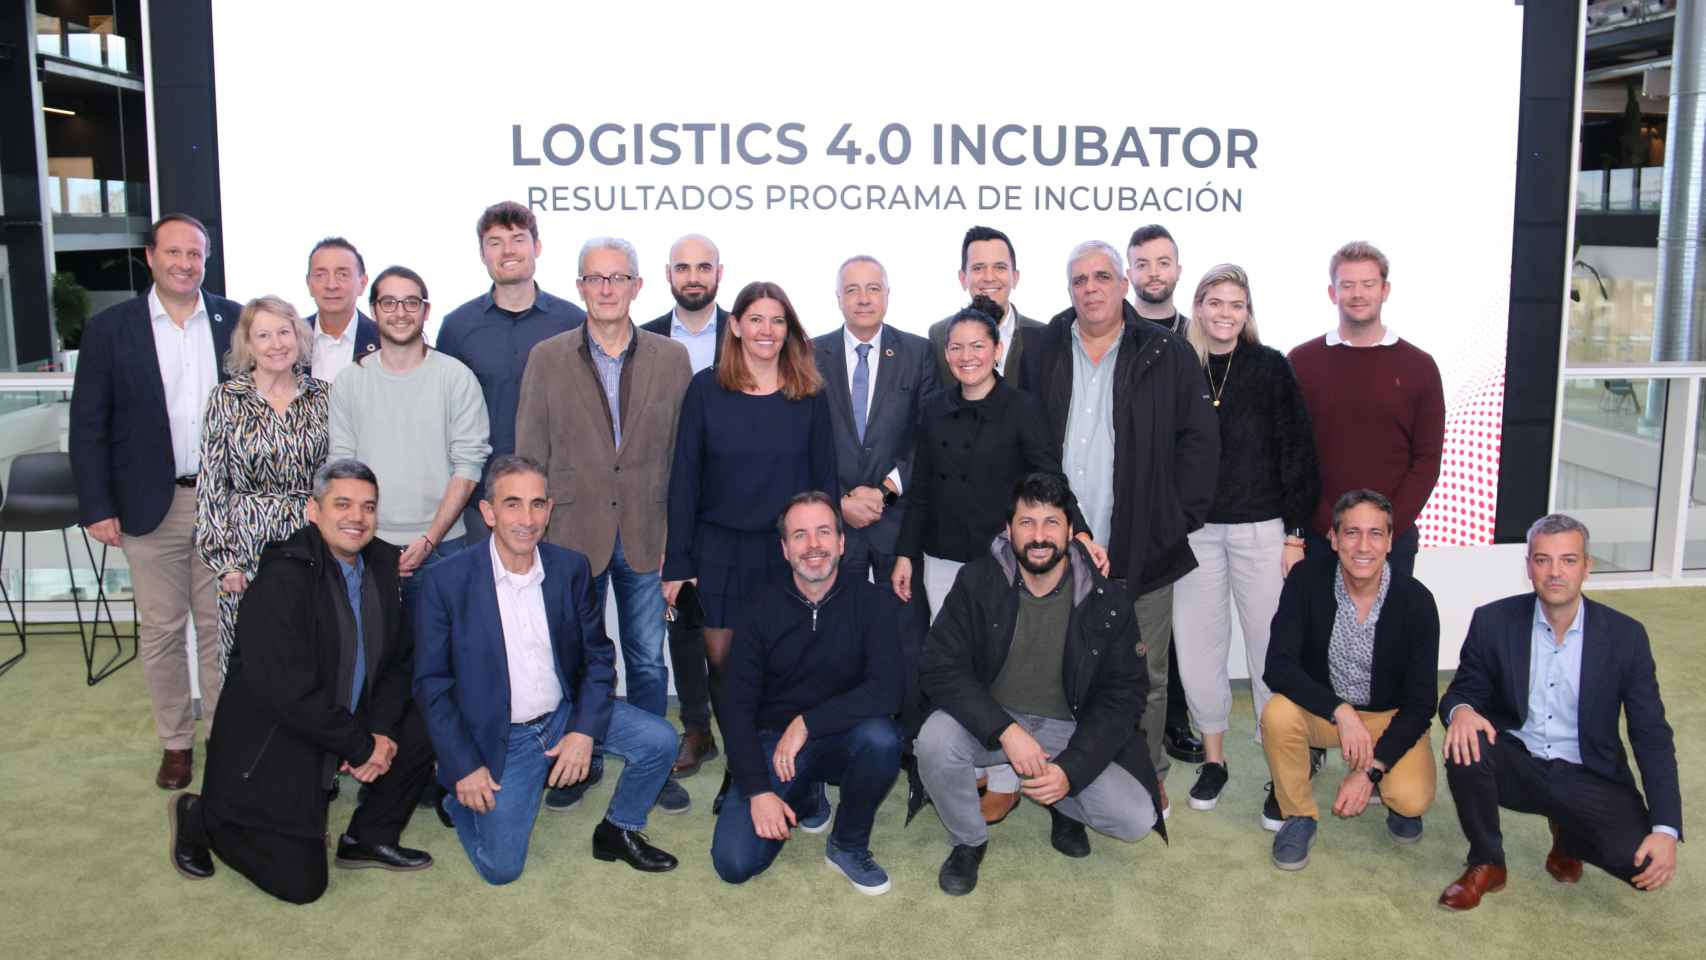 Representantes del CZFB junto a algunas de las startups incubadas en el Logistics 4.0 Incubator